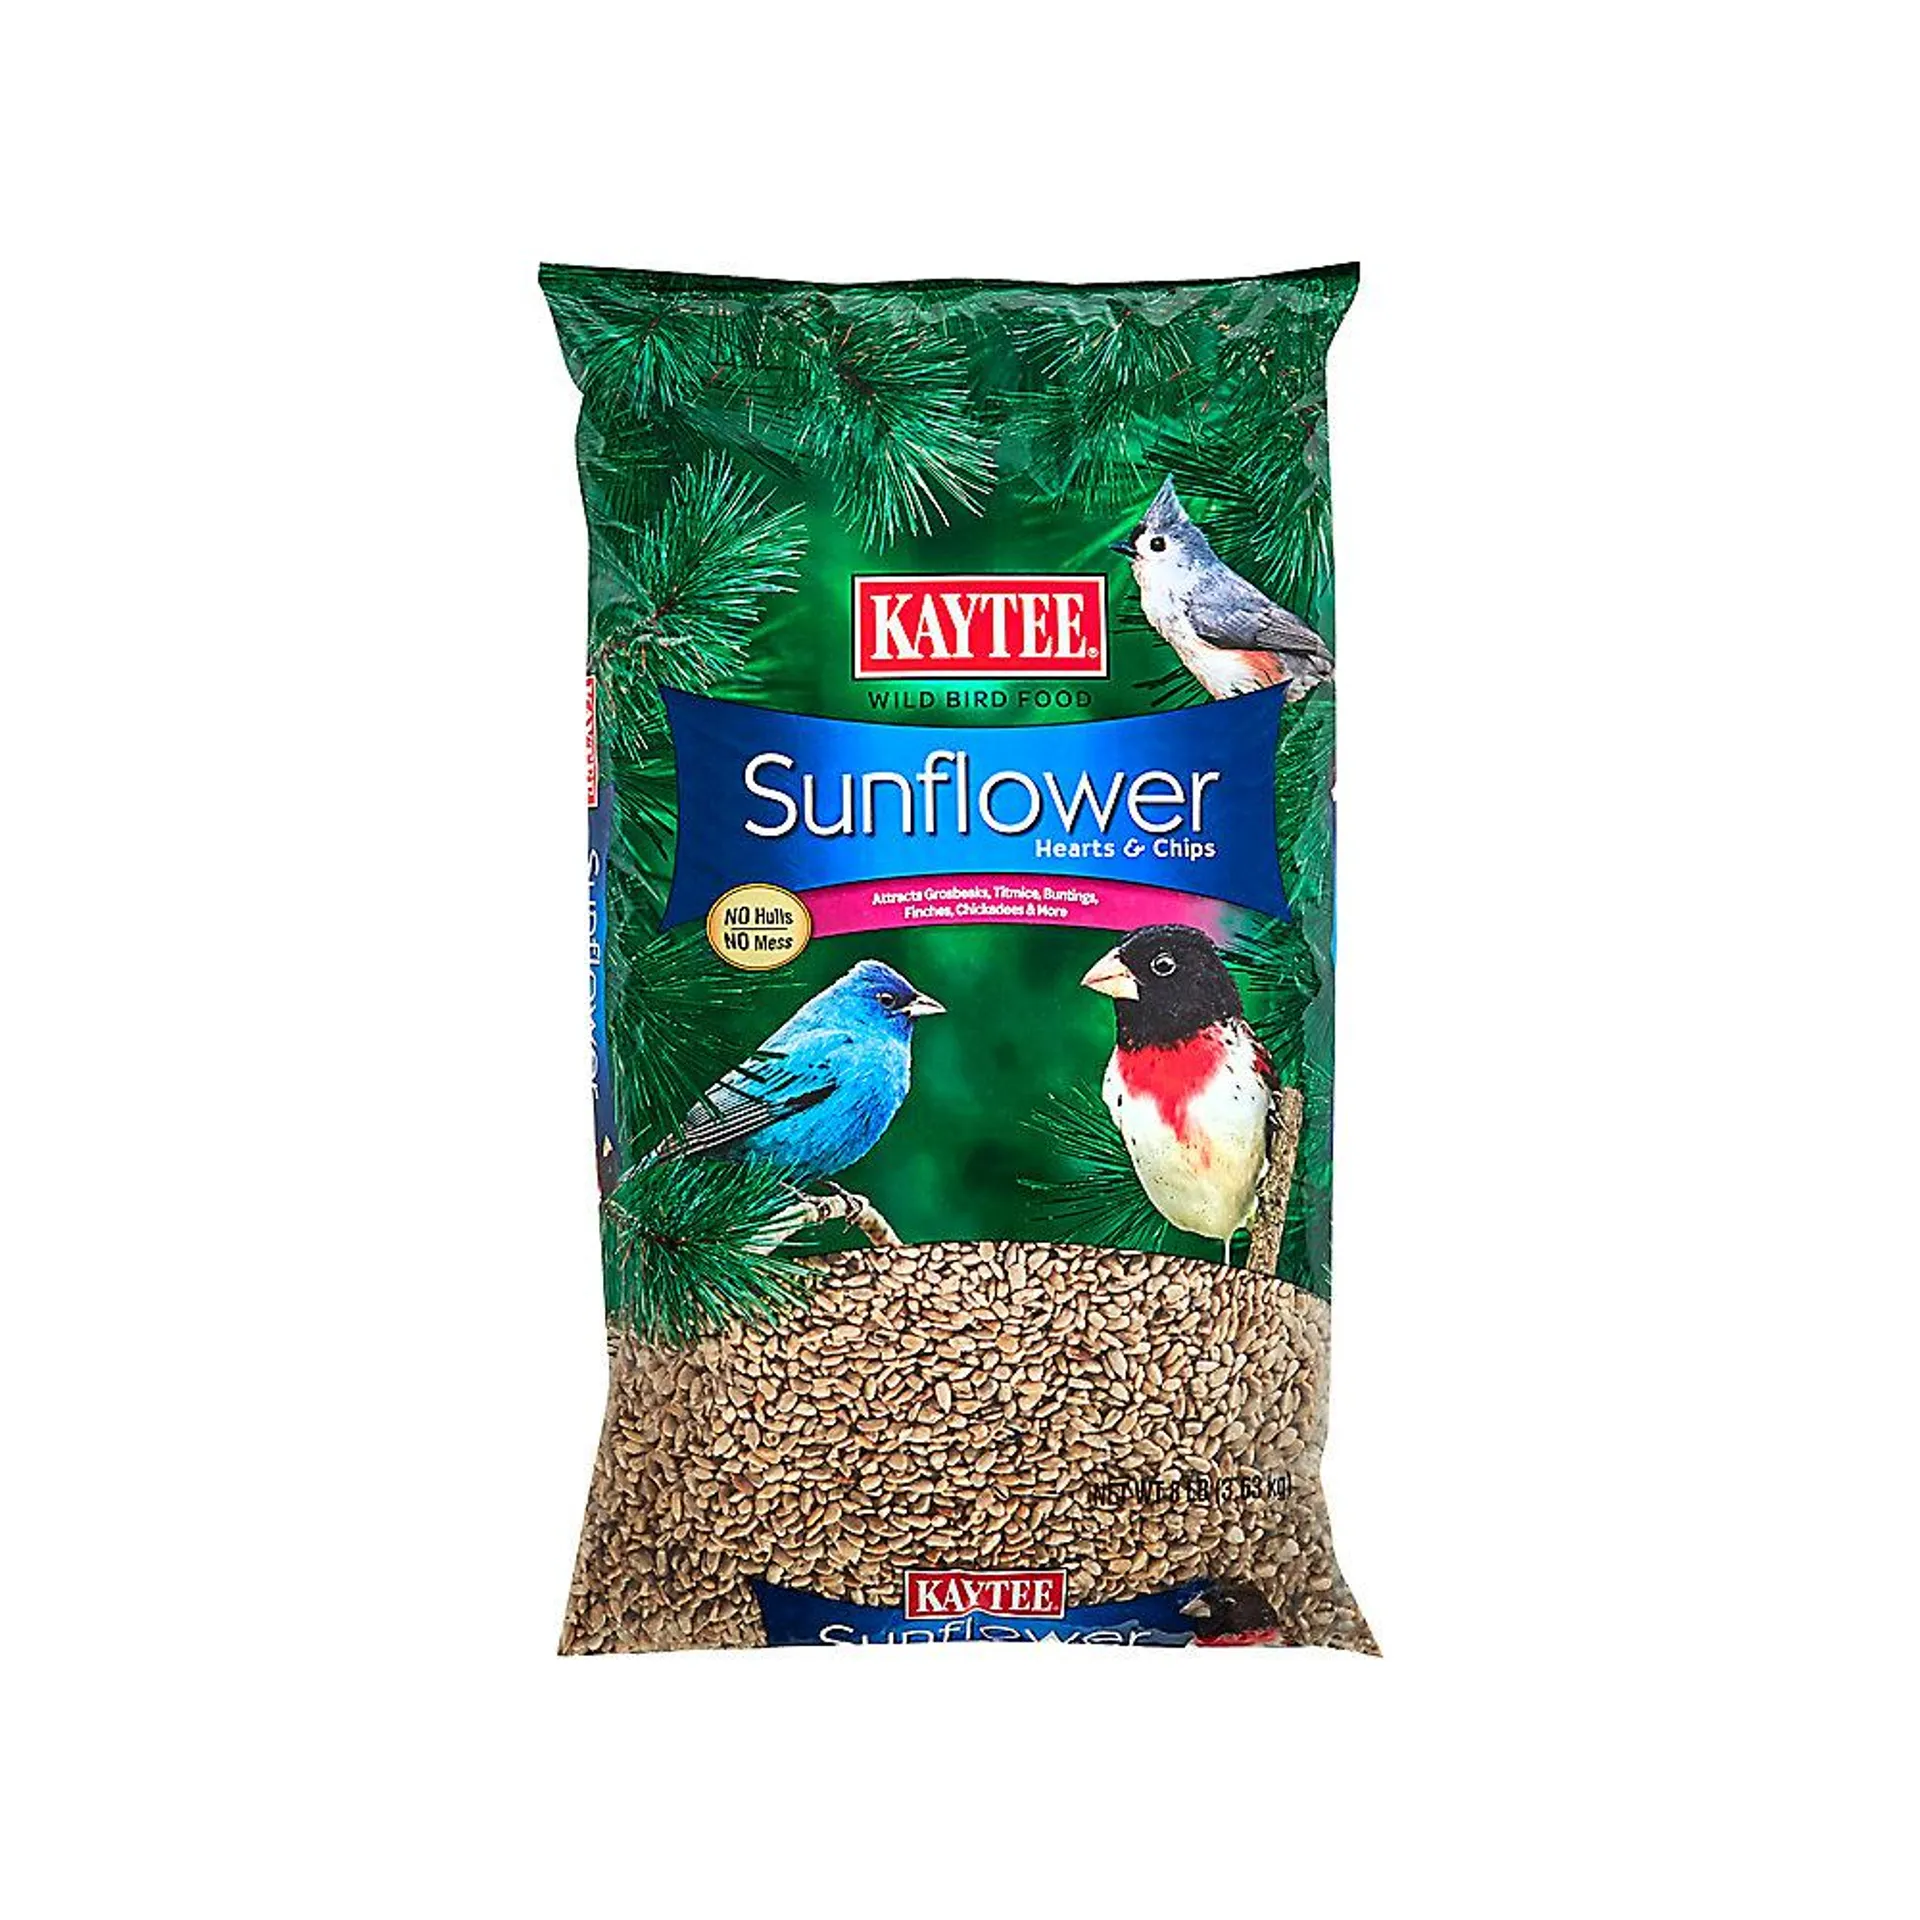 KAYTEE® Sunflower Hearts & Chips Wild Bird Food